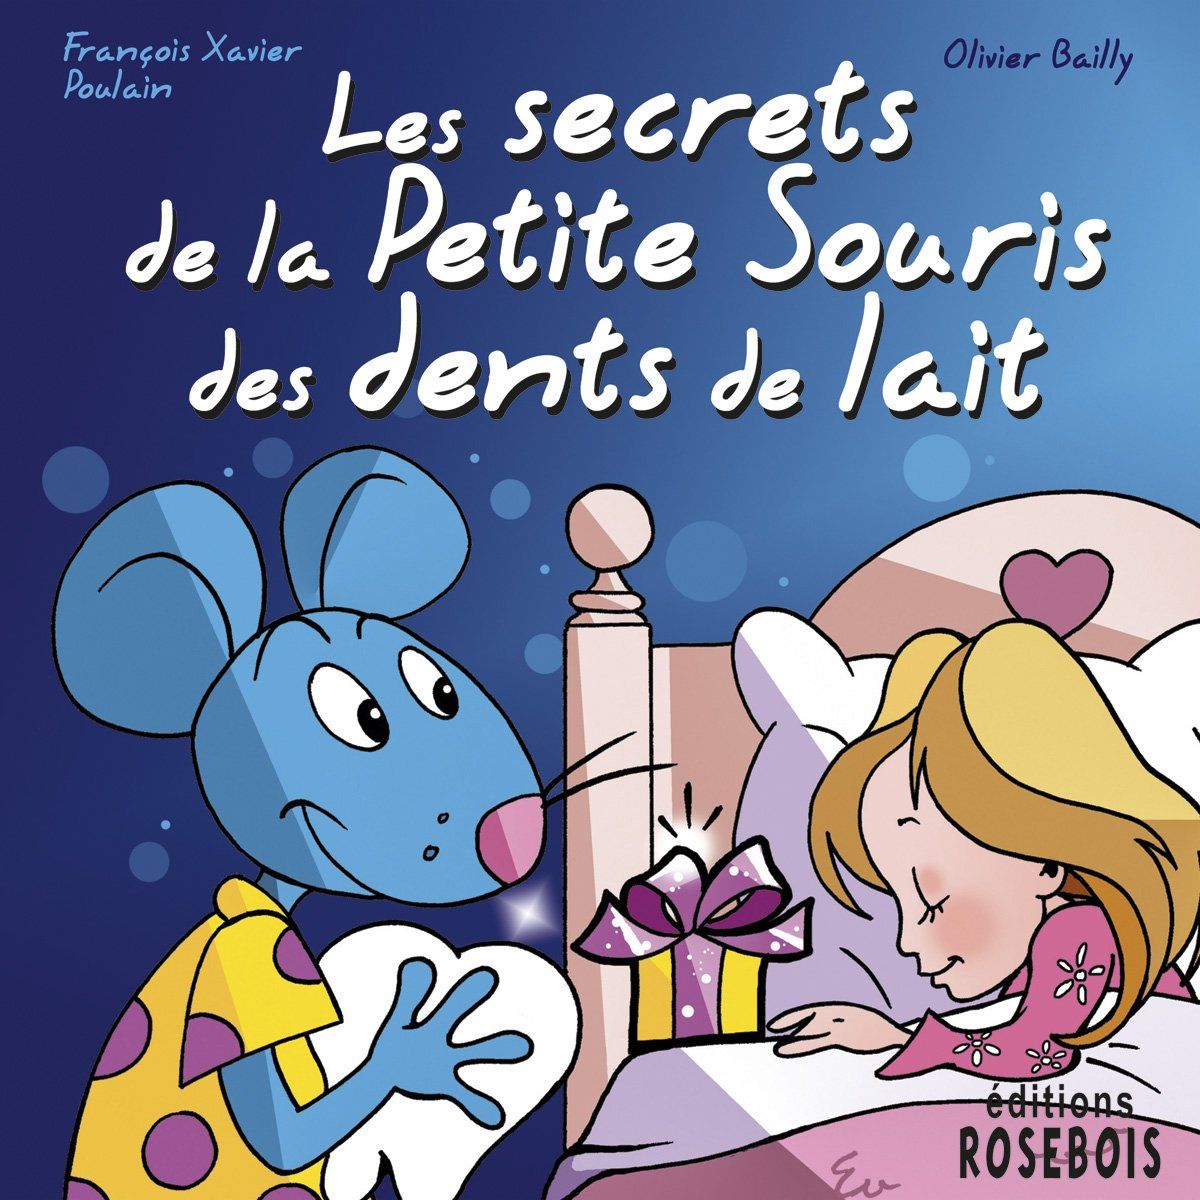 "La Petite Souris" originates from 17th century France. (Amazon.com)